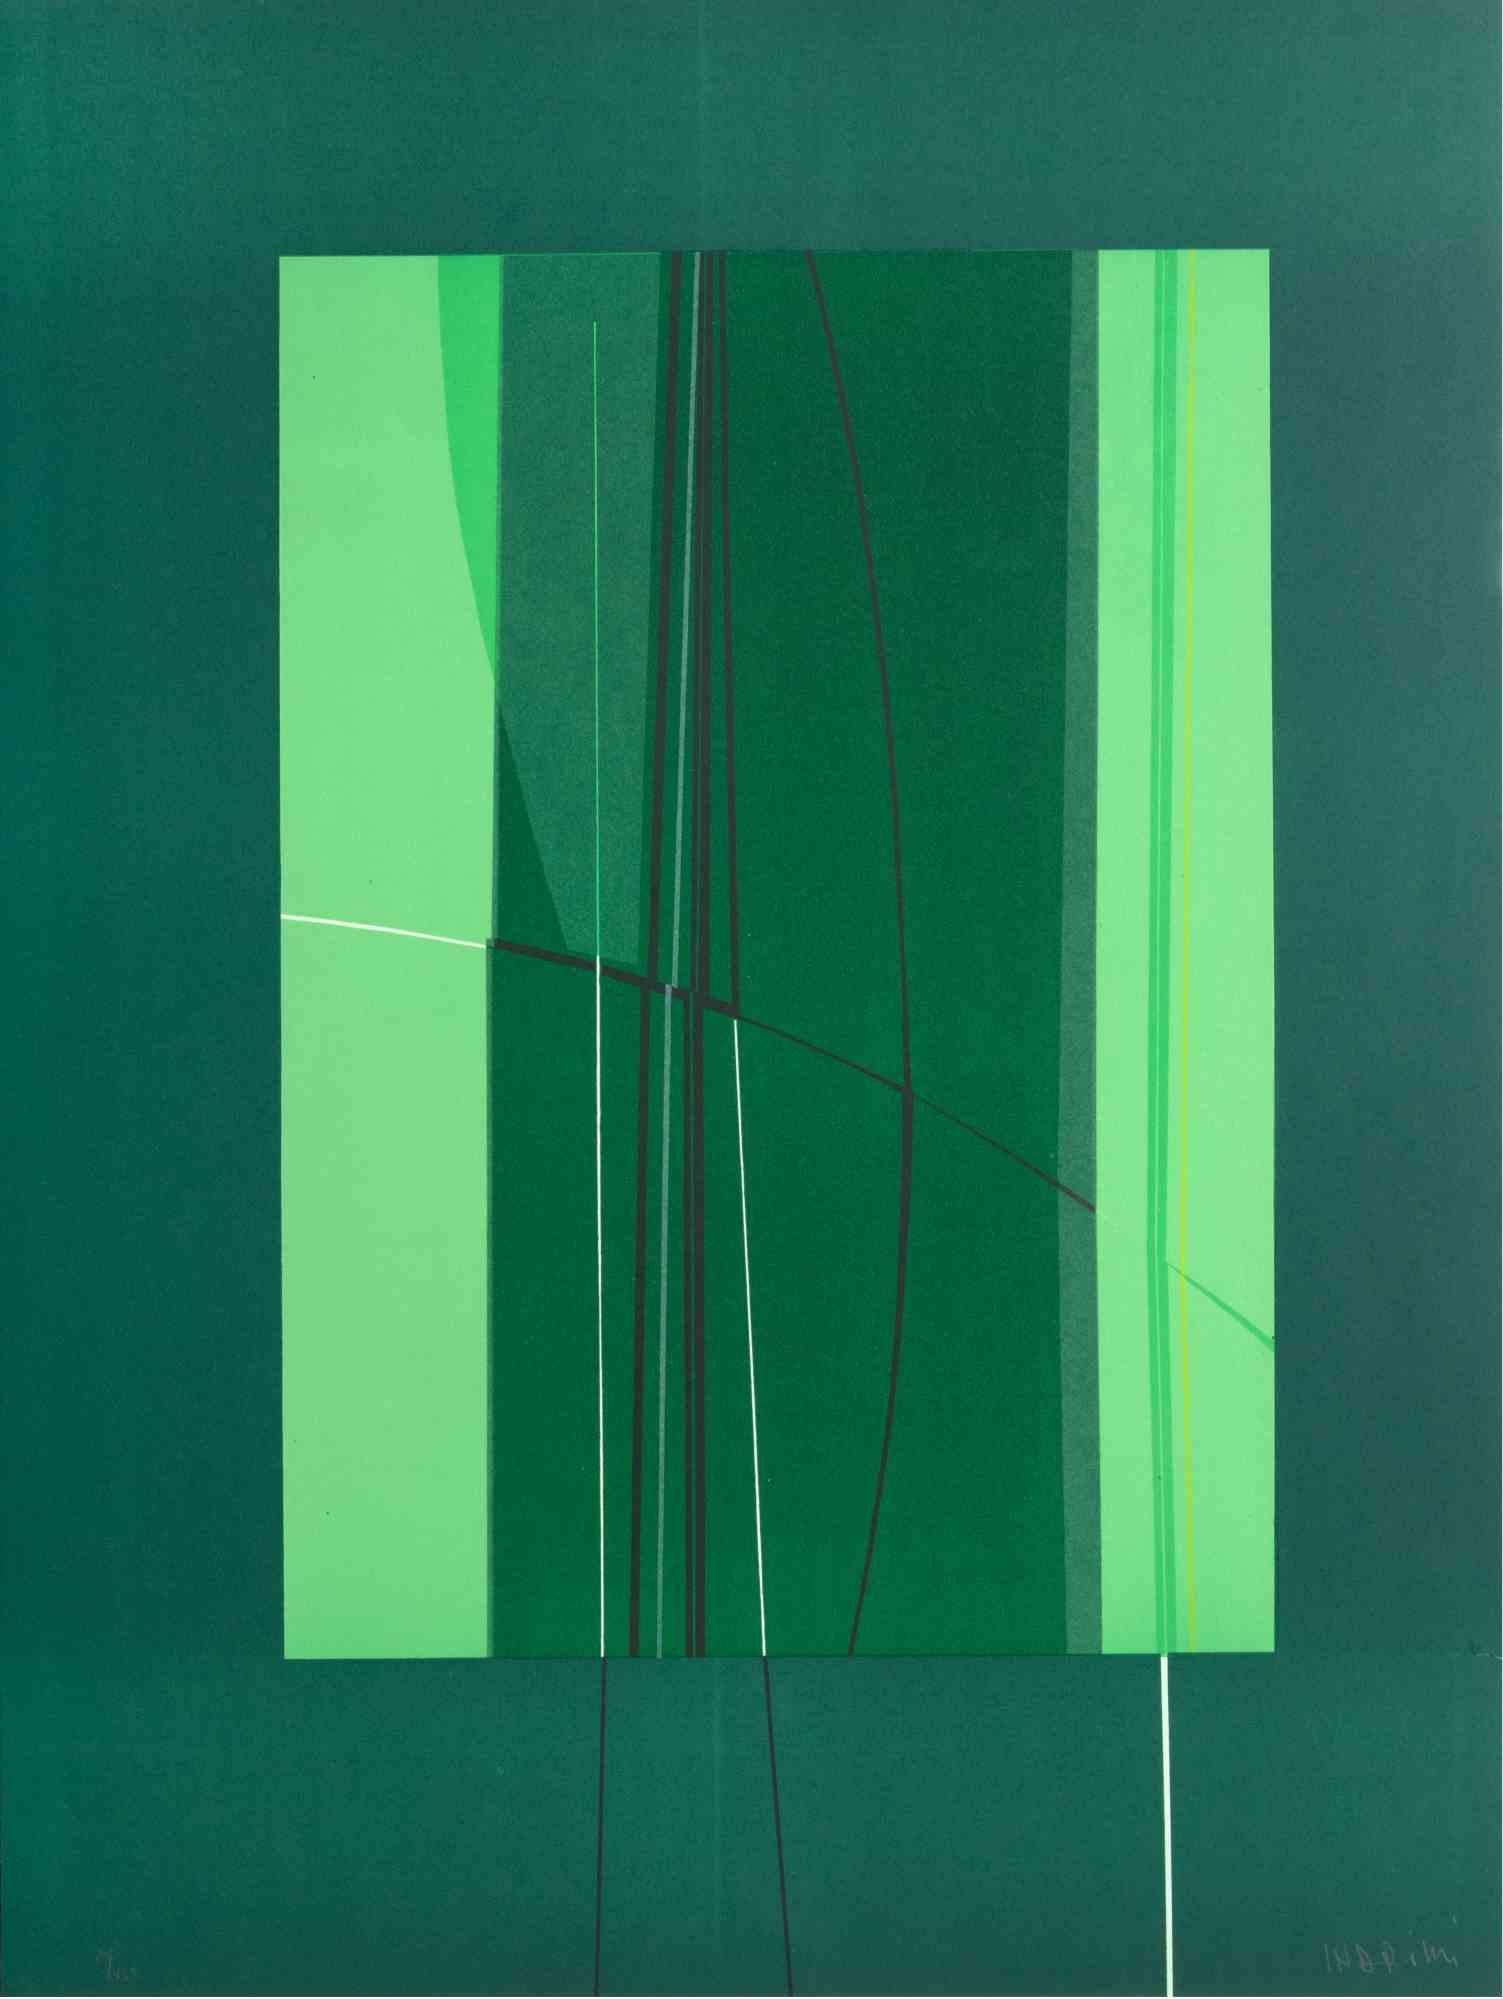 Green est une œuvre d'art contemporain réalisée par Lorenzo Indrimi dans les années 1970.

Lithographie en couleurs mélangées.

Signé à la main et daté dans la marge inférieure.

Édition de 20/150.